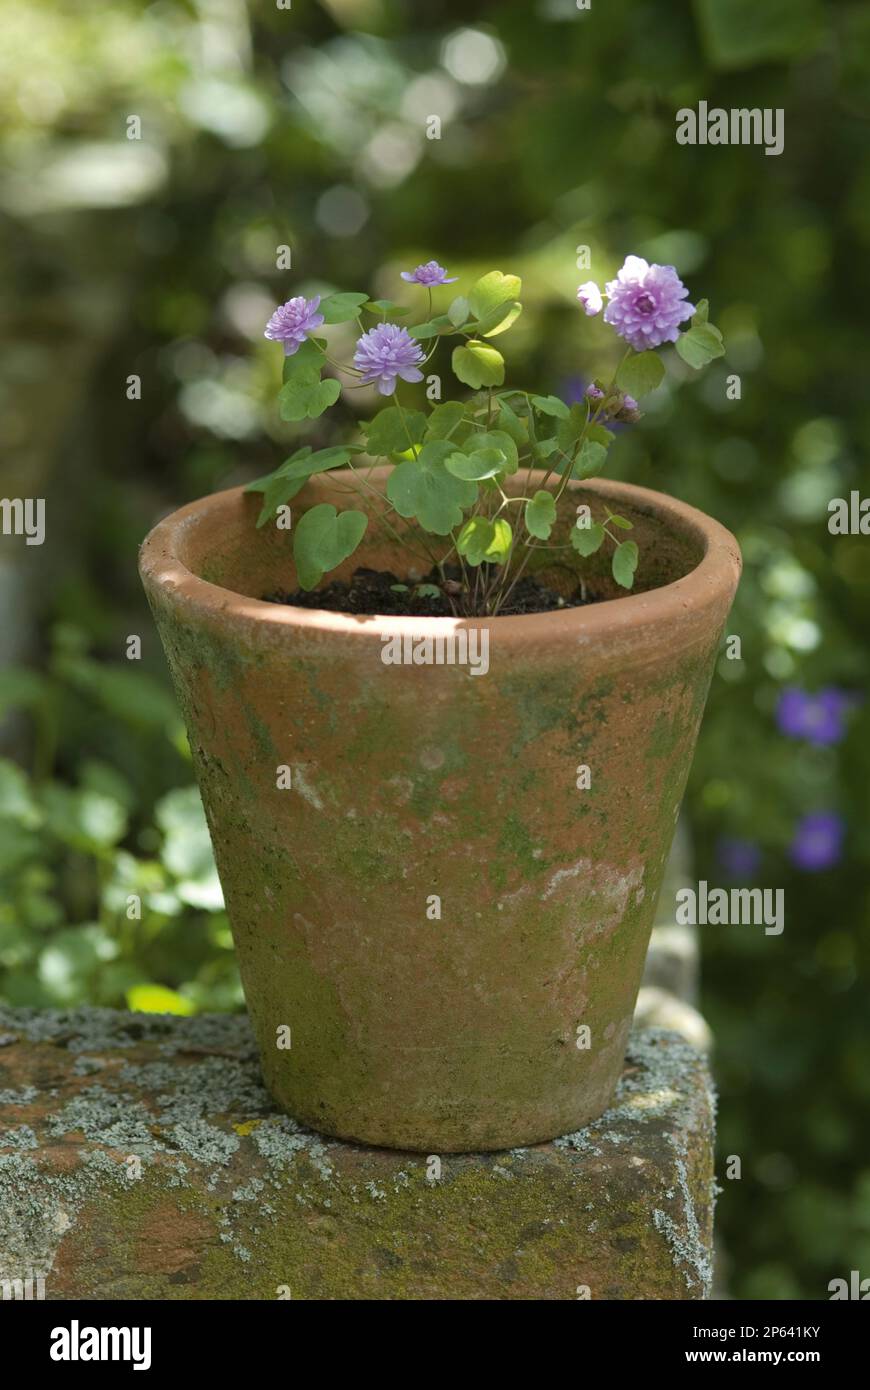 Anemonella 'Oscar Schoaf' little purple flowers in old terracotta pot Stock Photo